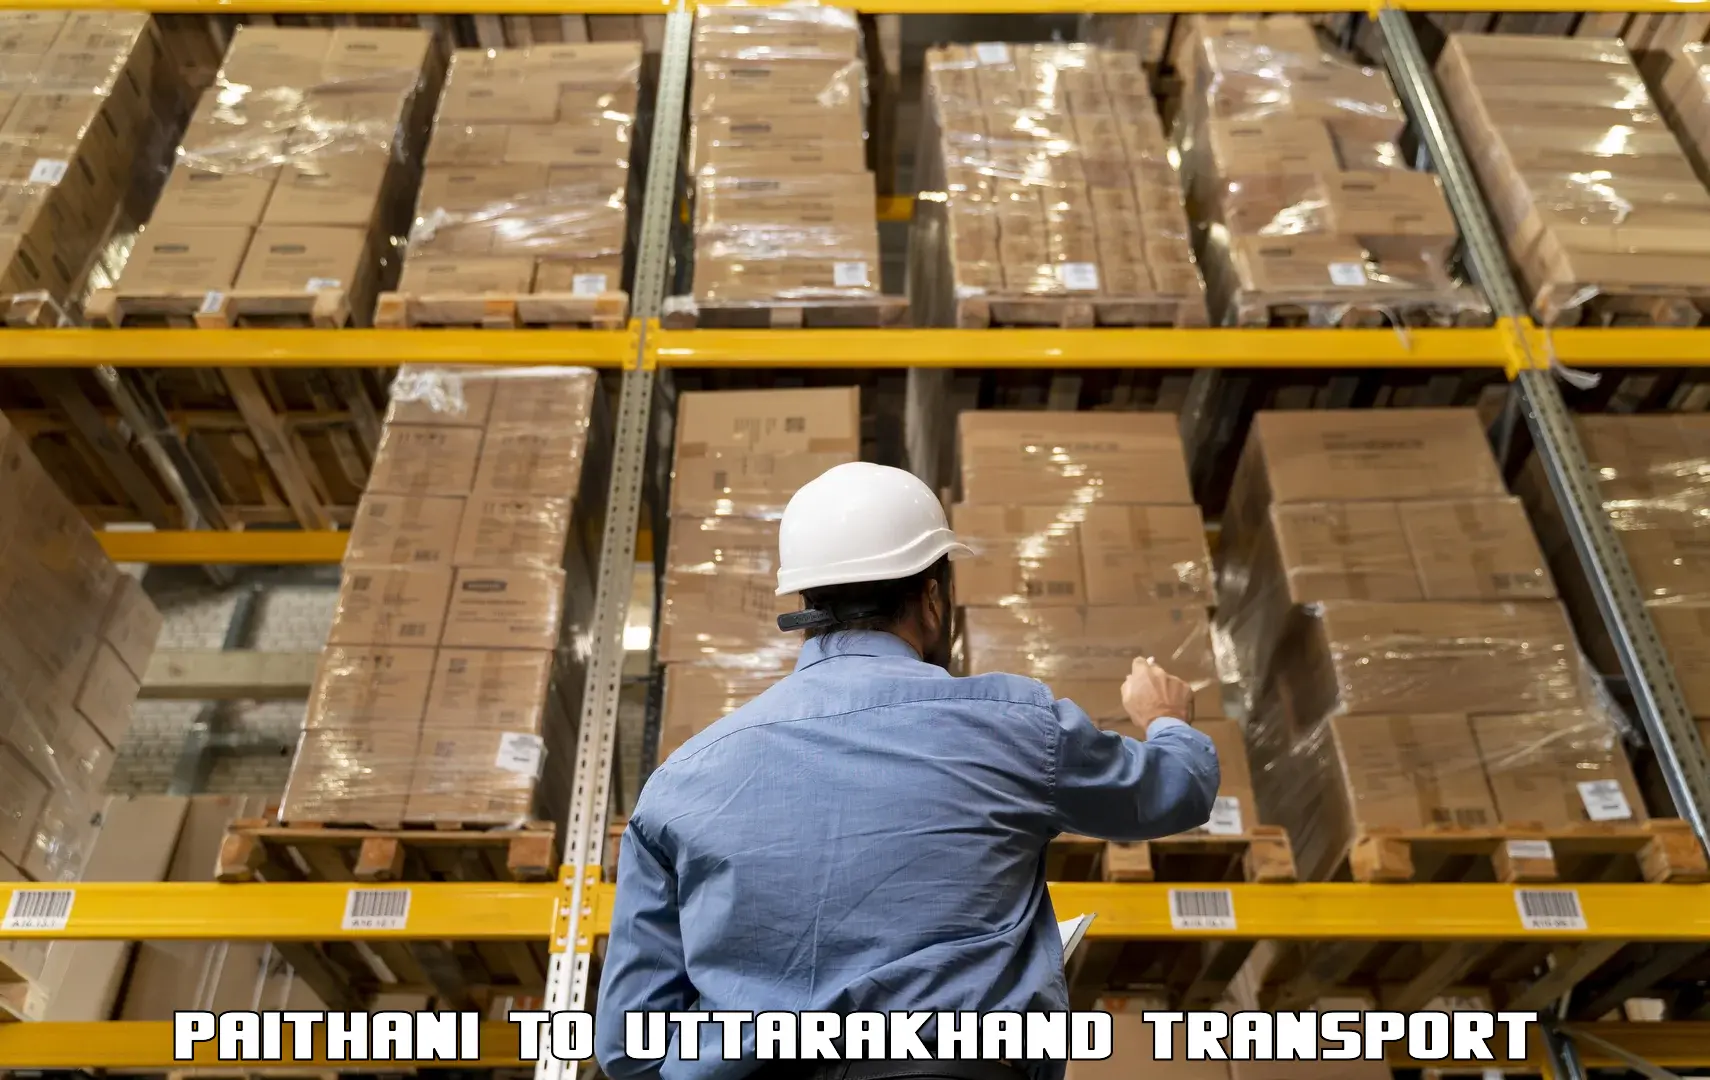 Transport shared services Paithani to Uttarkashi